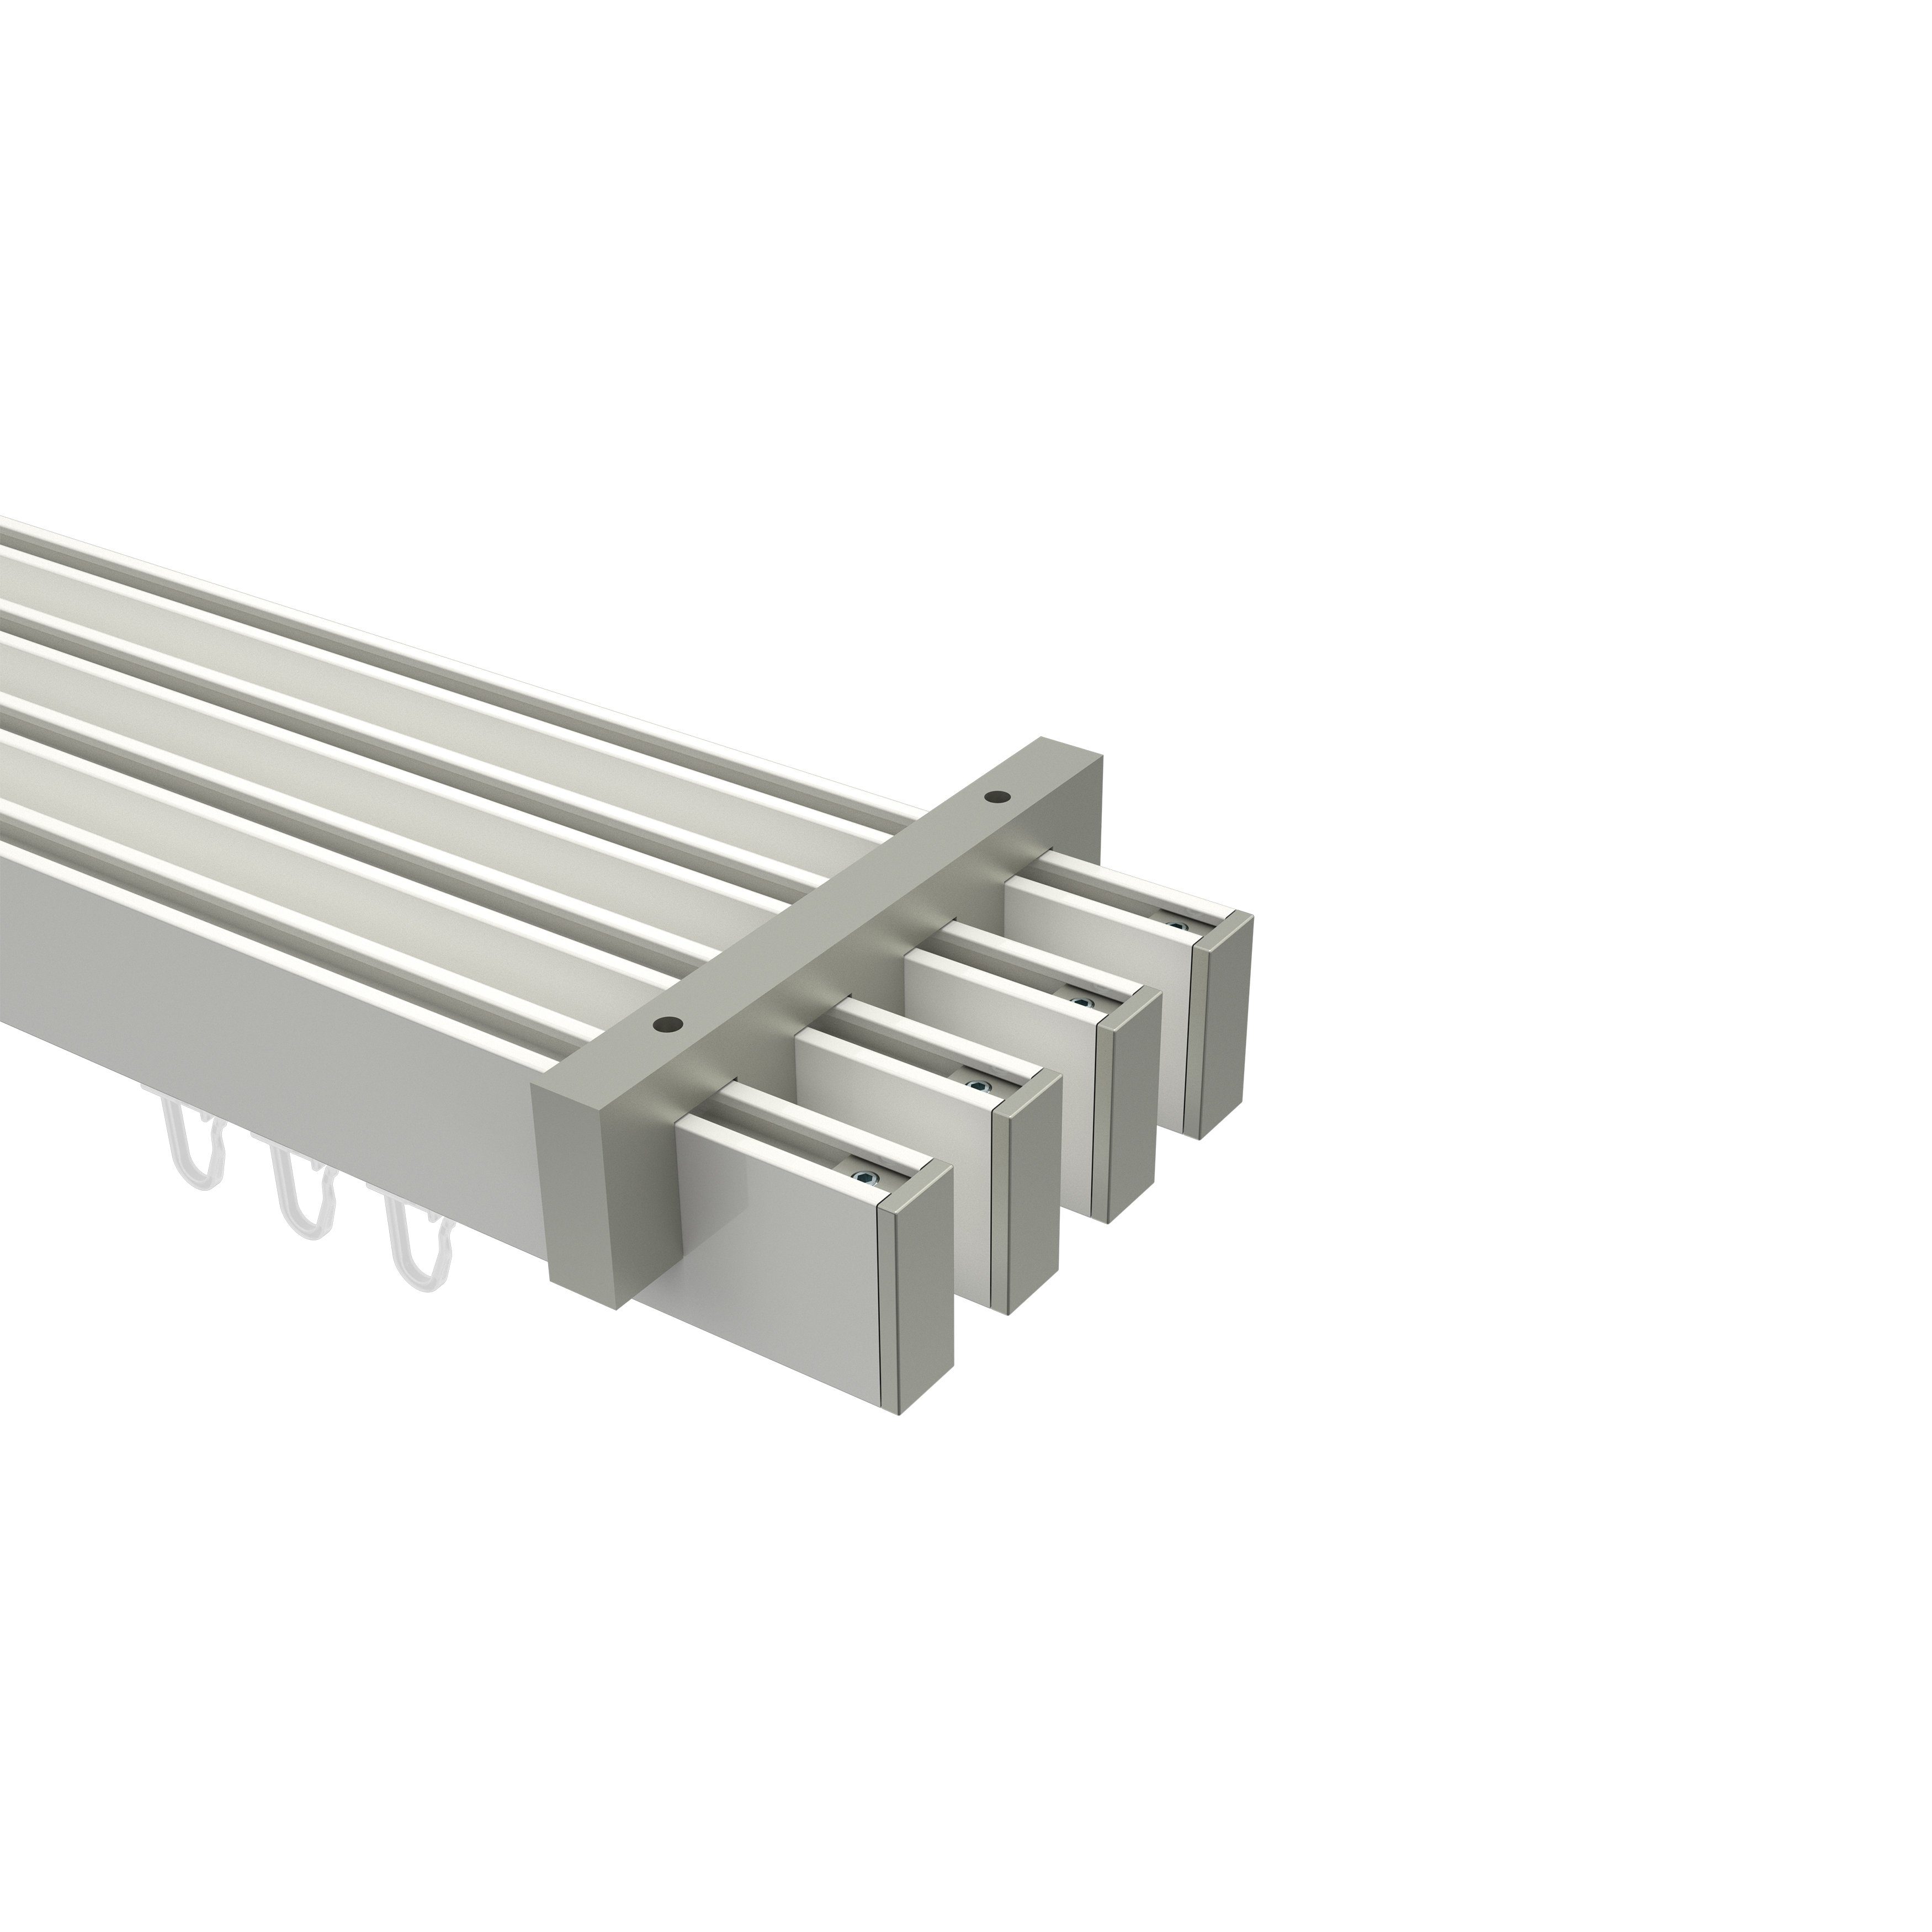 Gardinenstange Smartline Paxo, INTERDECO, 4-läufig, 14x35 mm, eckig, Deckenmontage, Weiß / Edelstahl-Optik